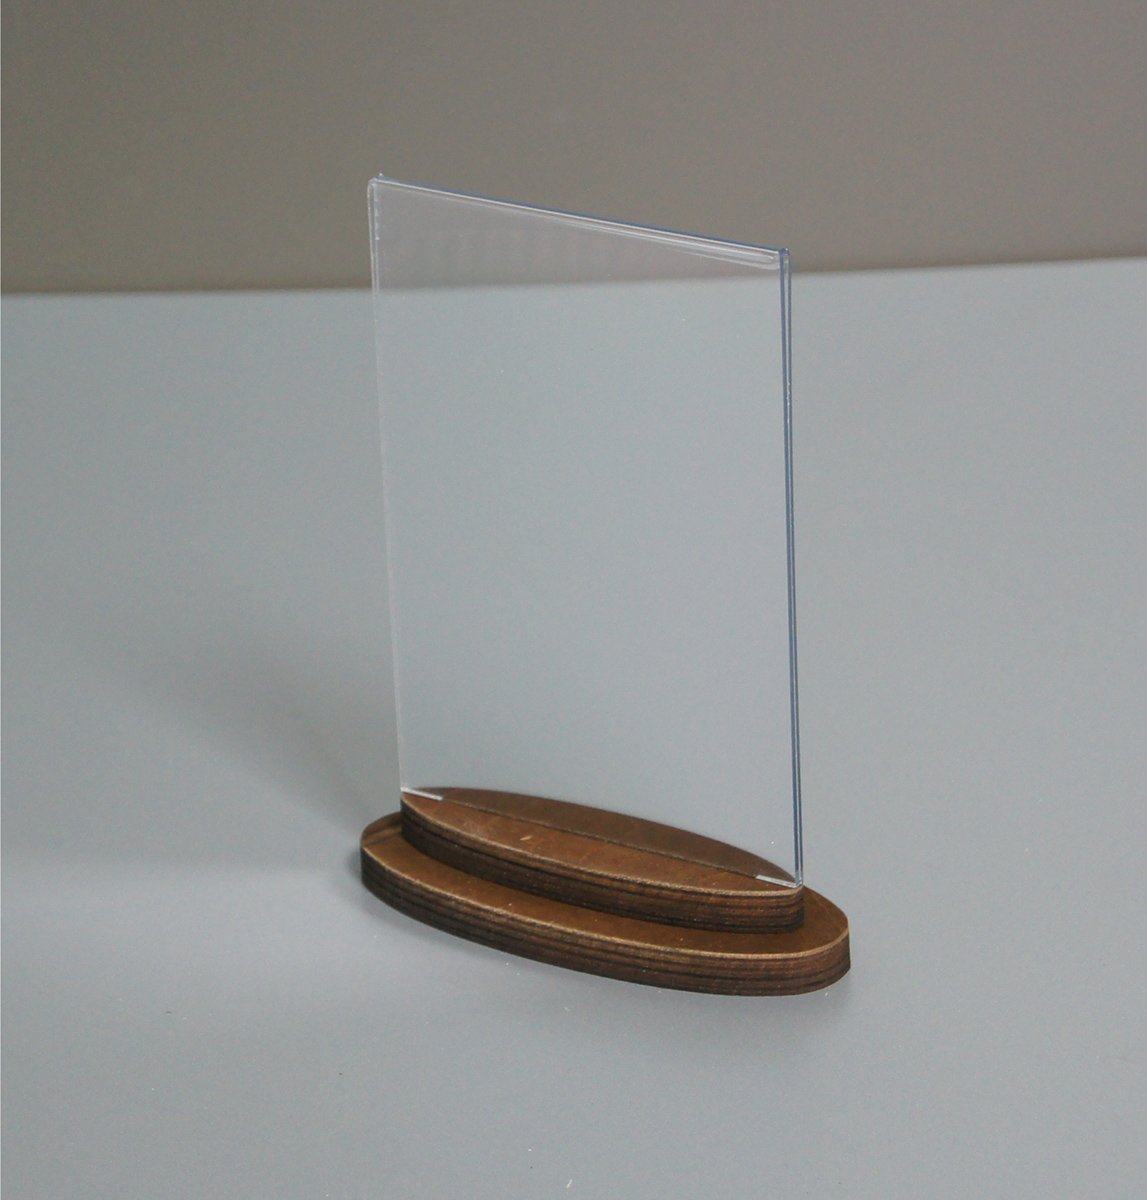 Фото товара: Тейбл тент с деревянным фигурным основанием для формата А6, арт. 14206/o